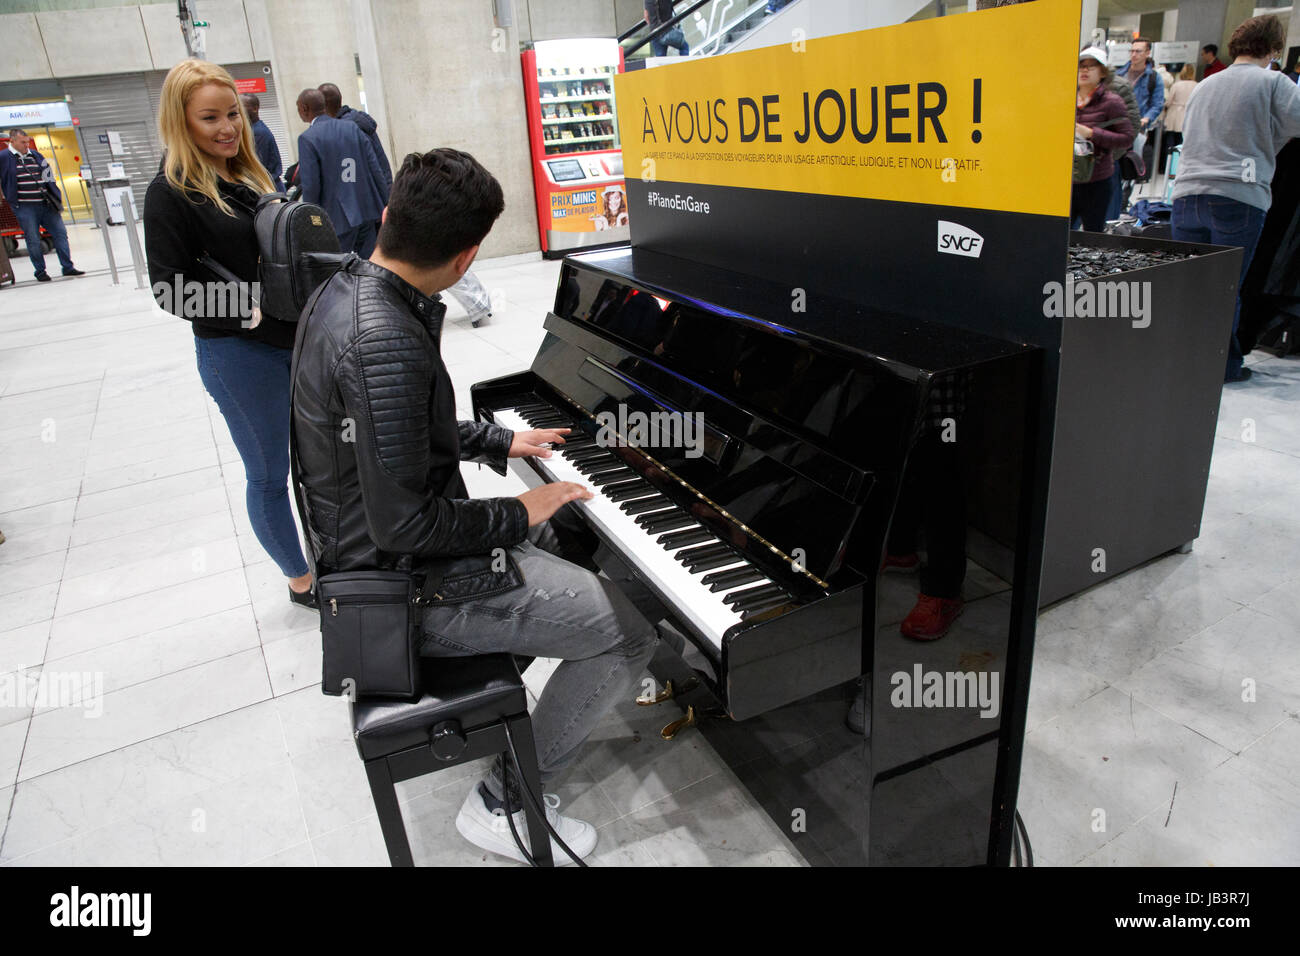 Un homme jouant du piano dans un espace public, l'aéroport Roissy Charles  de Gaulle, Paris, France Photo Stock - Alamy